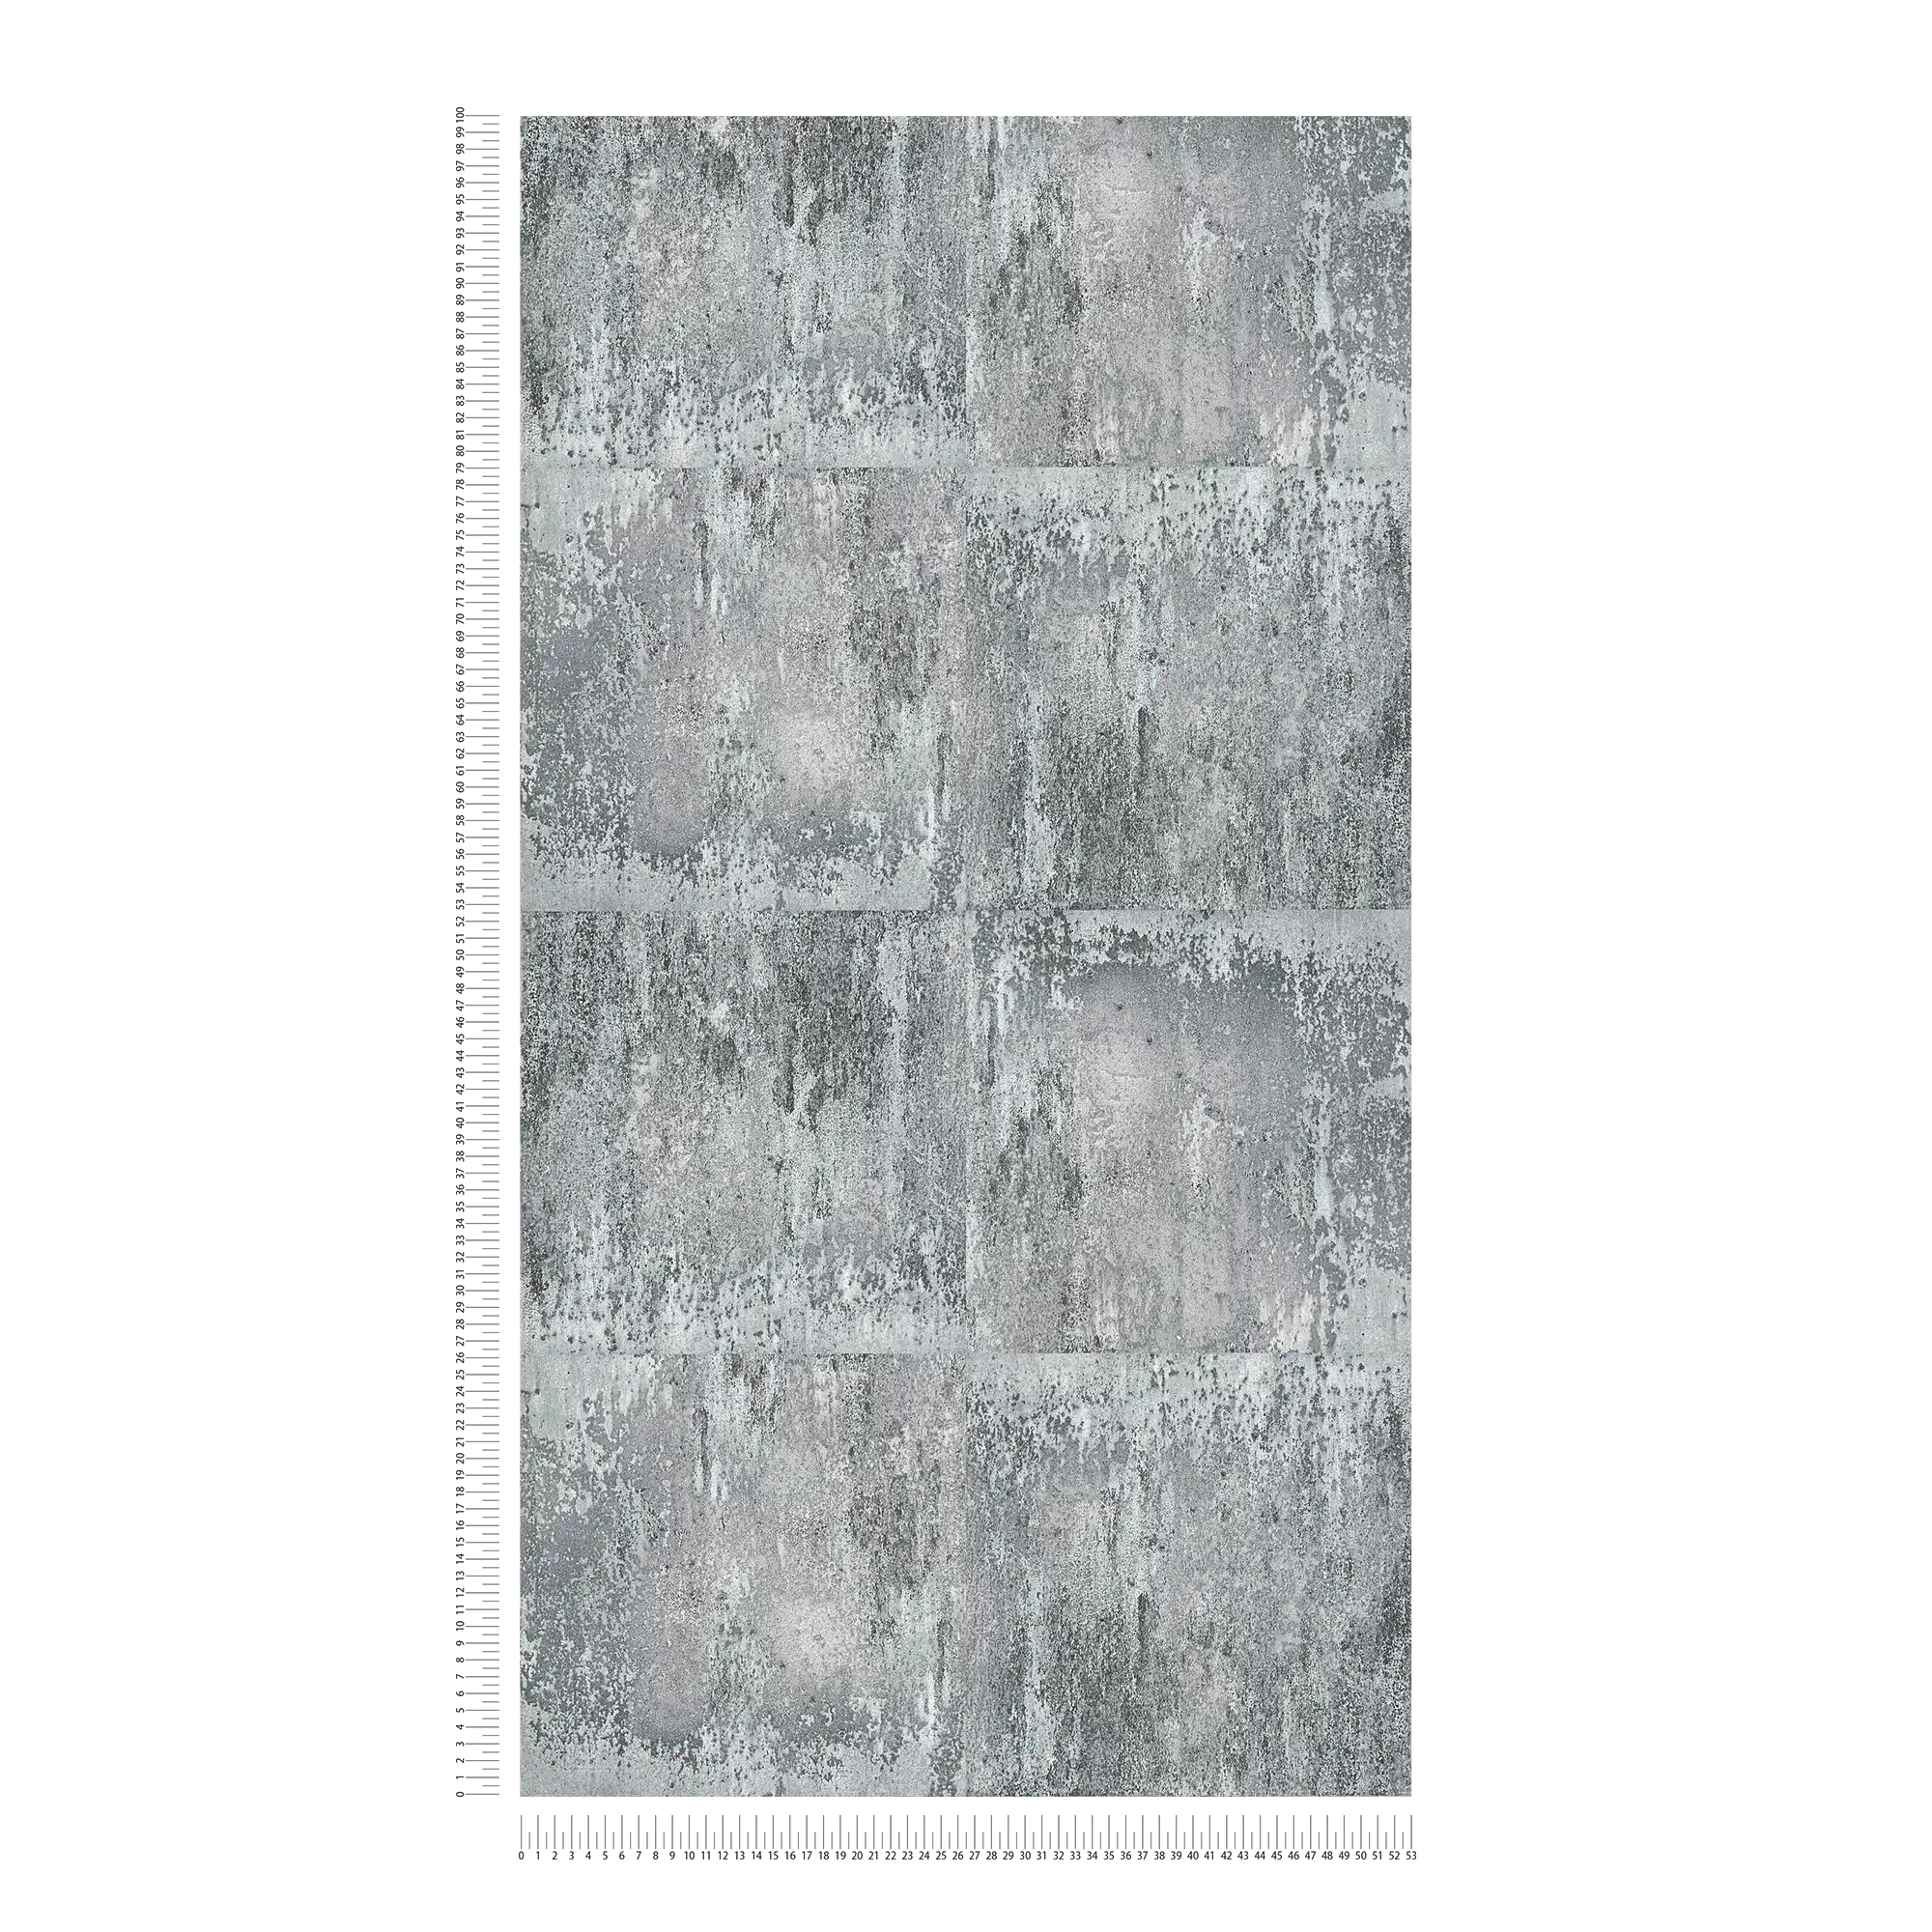             Carta da parati con aspetto metallico rustico e motivo grezzo - grigio, nero, argento
        